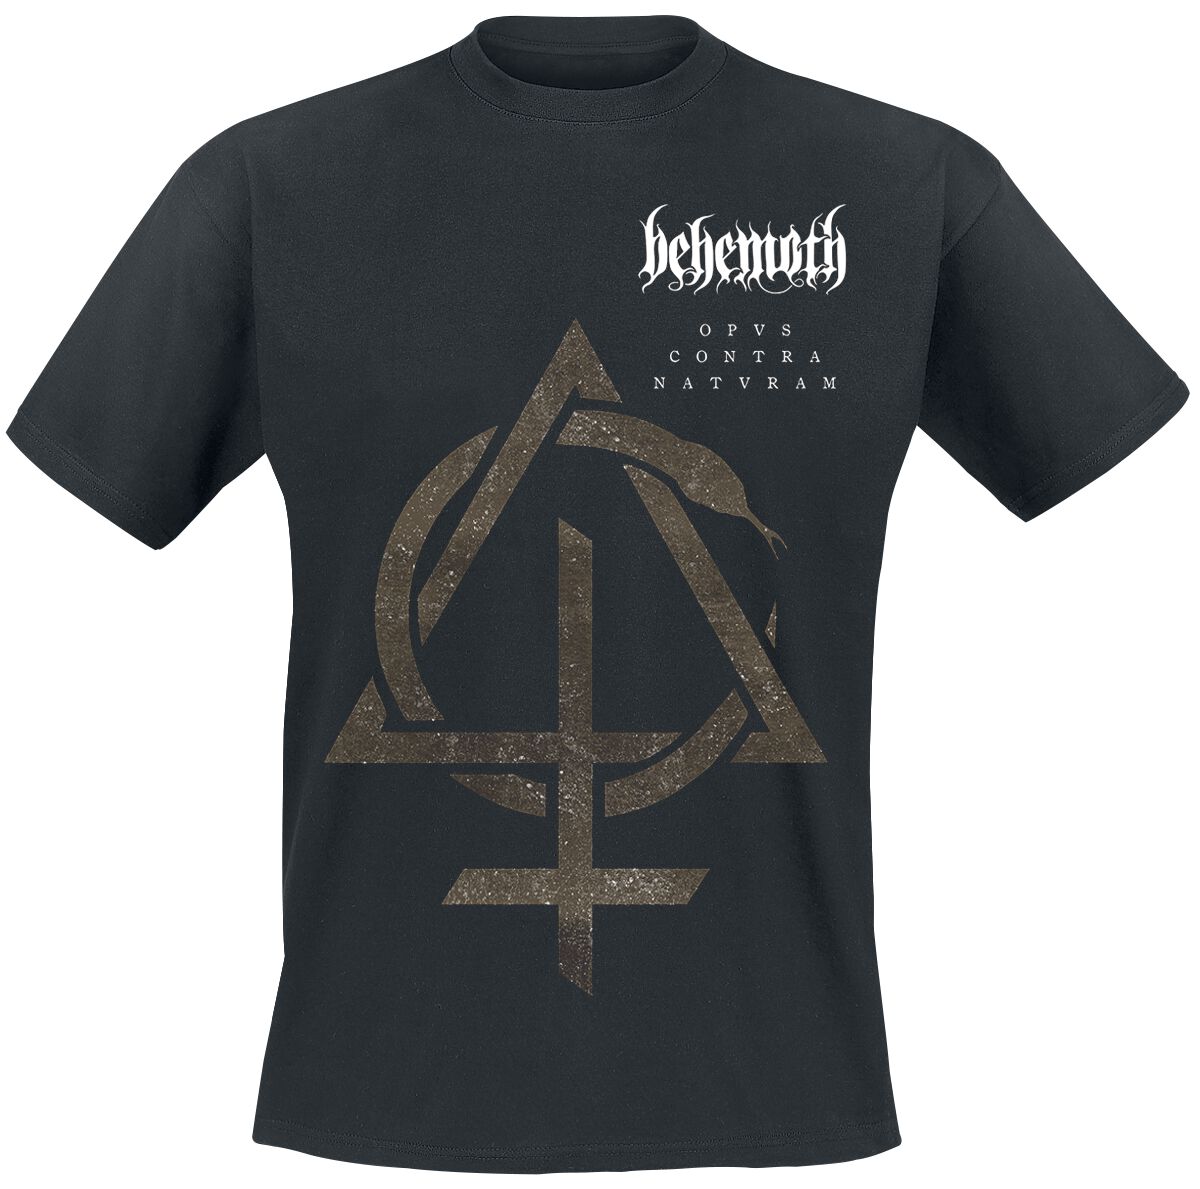 Behemoth T-Shirt - Contra Natvram - S bis 3XL - für Männer - Größe L - schwarz  - Lizenziertes Merchandise!